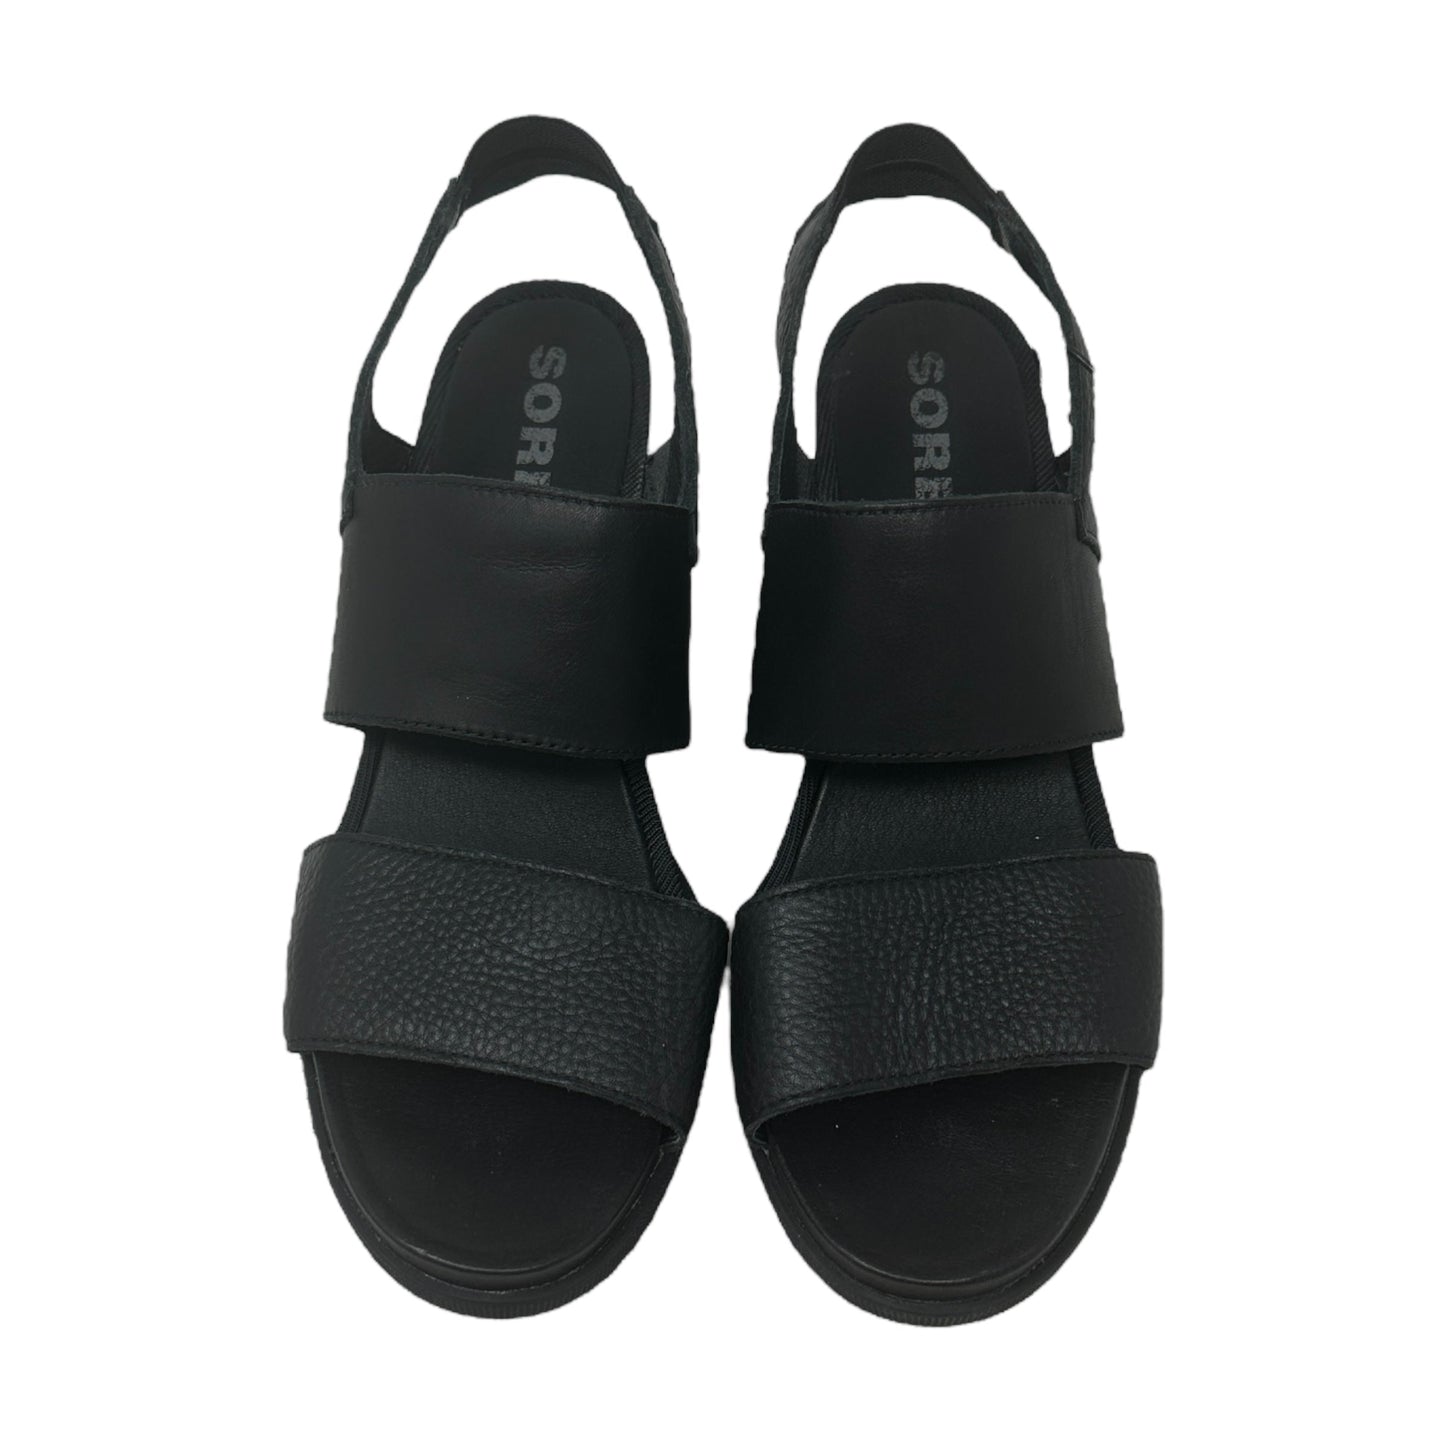 Joanie ll Slingback Wedge Sandal By Sorel  Size: 11